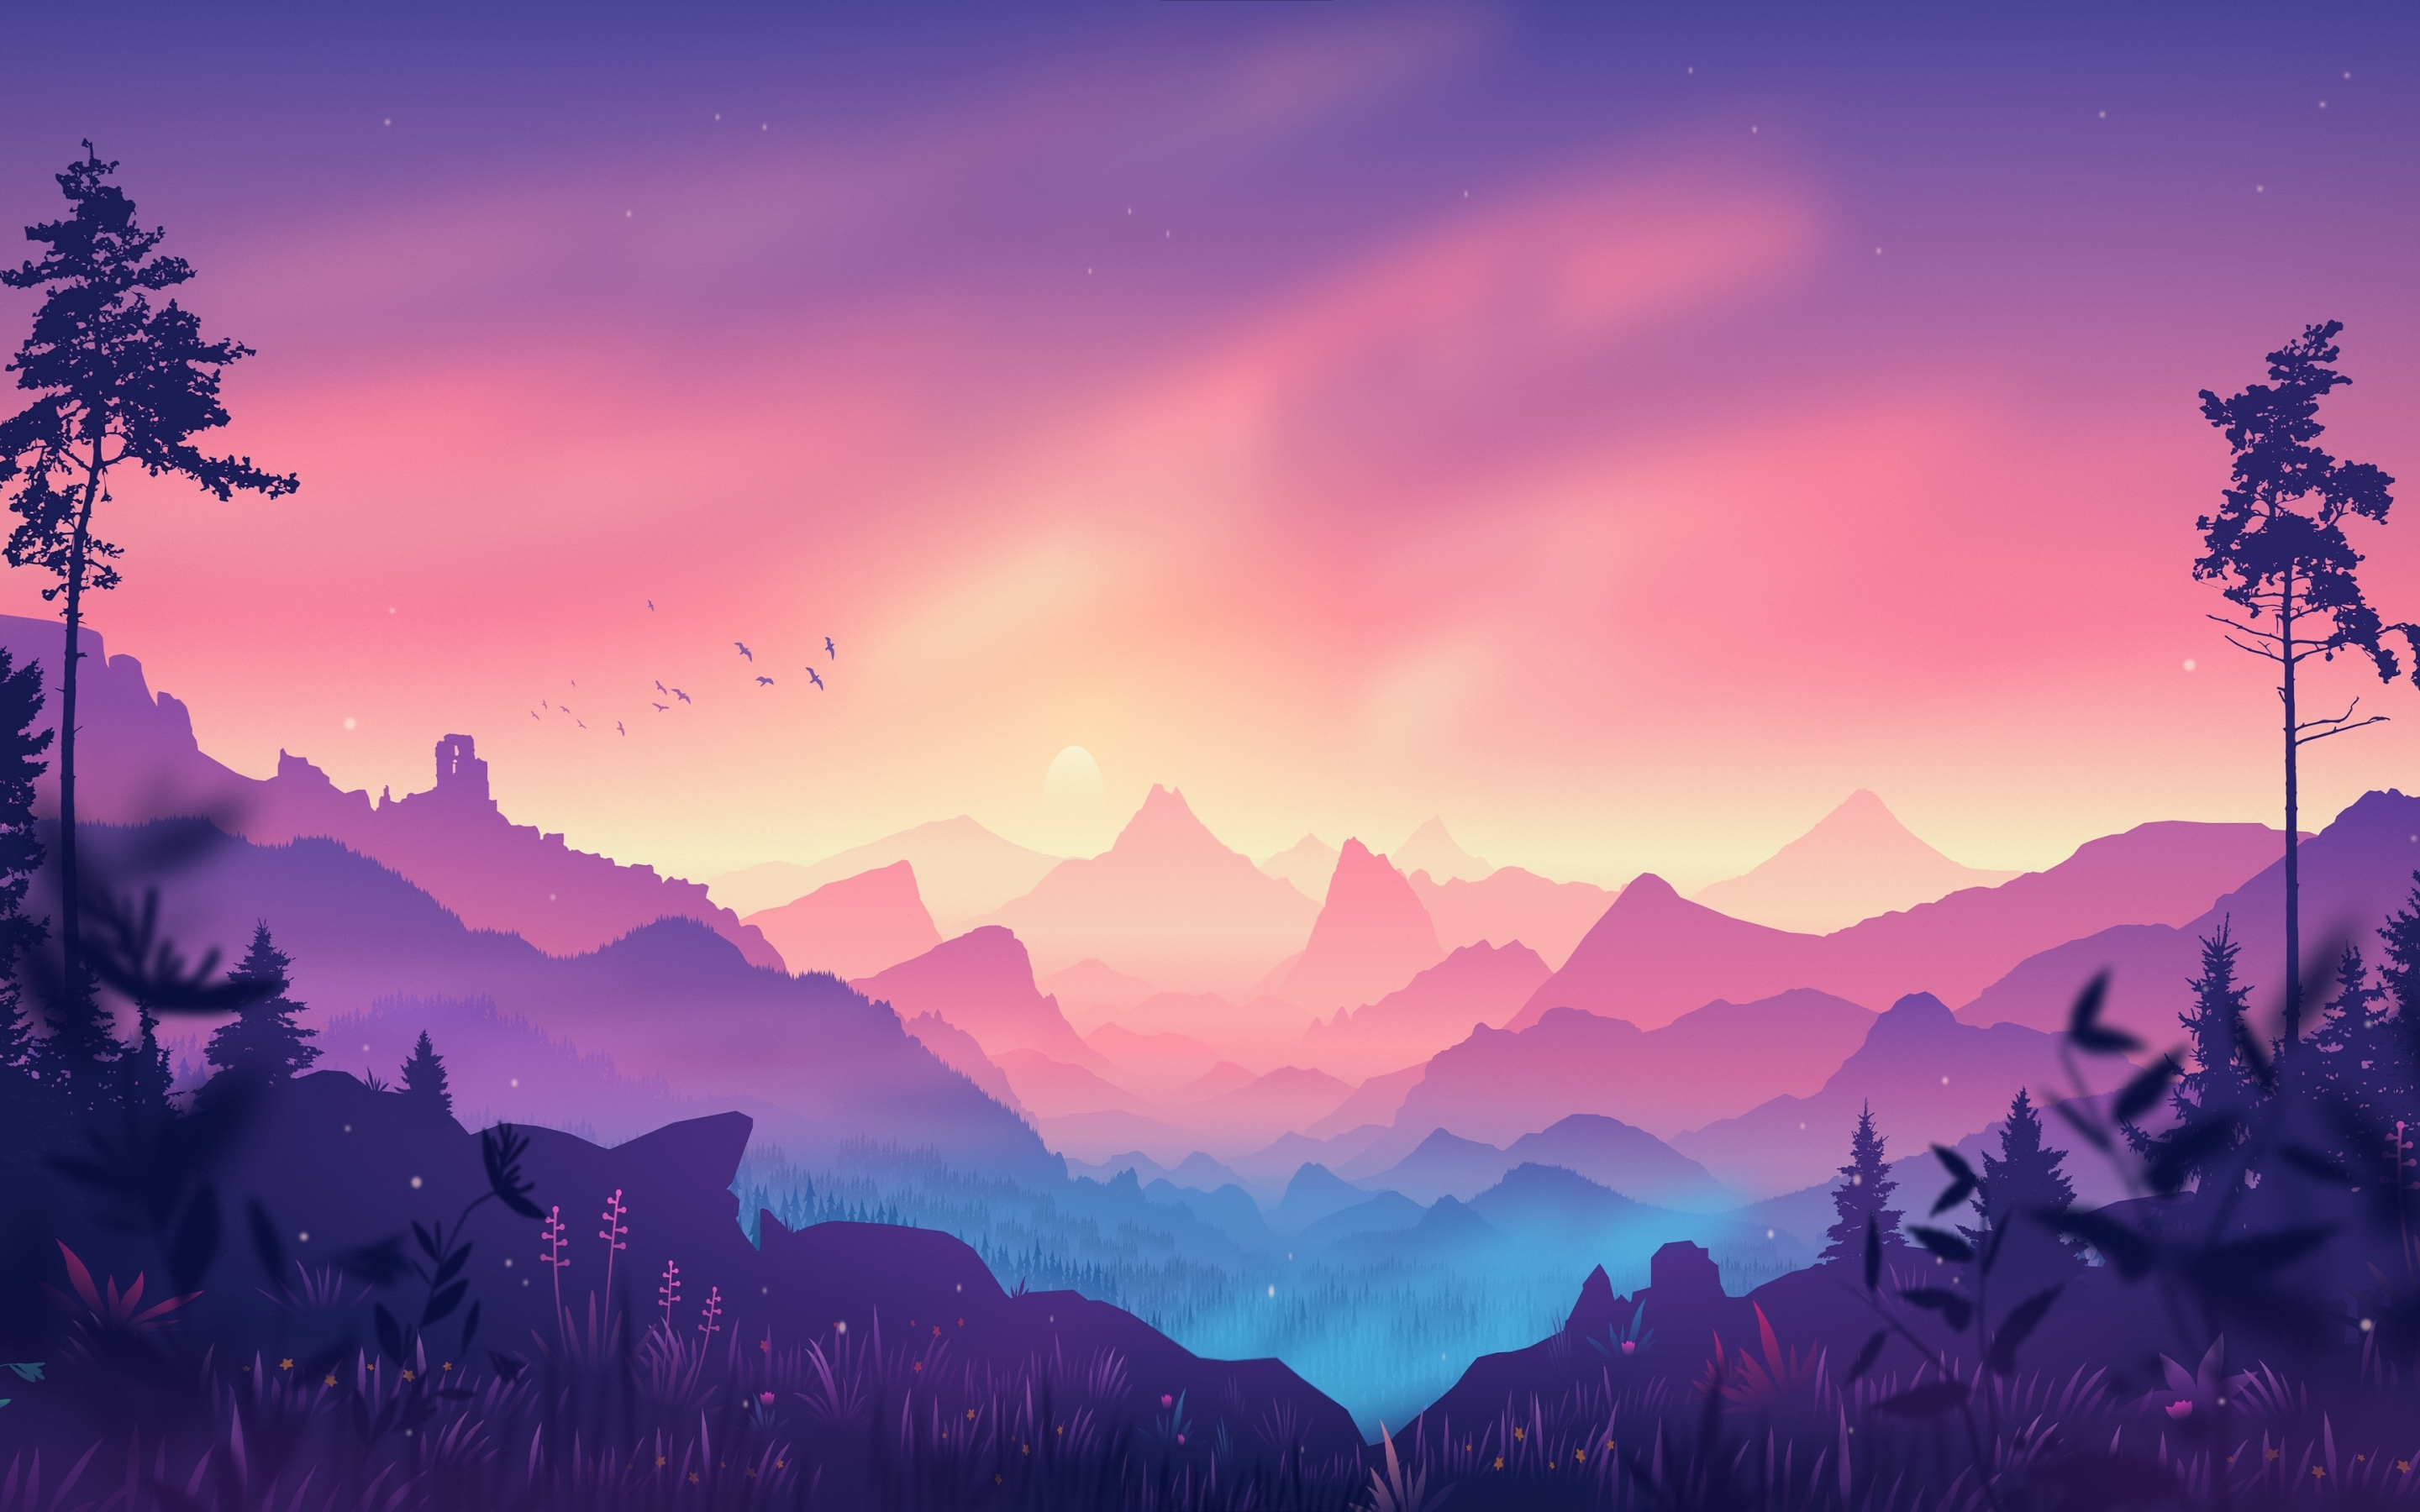 Digital art, horizon, mountains, forest, pinkish art, 2880x1800 wallpaper